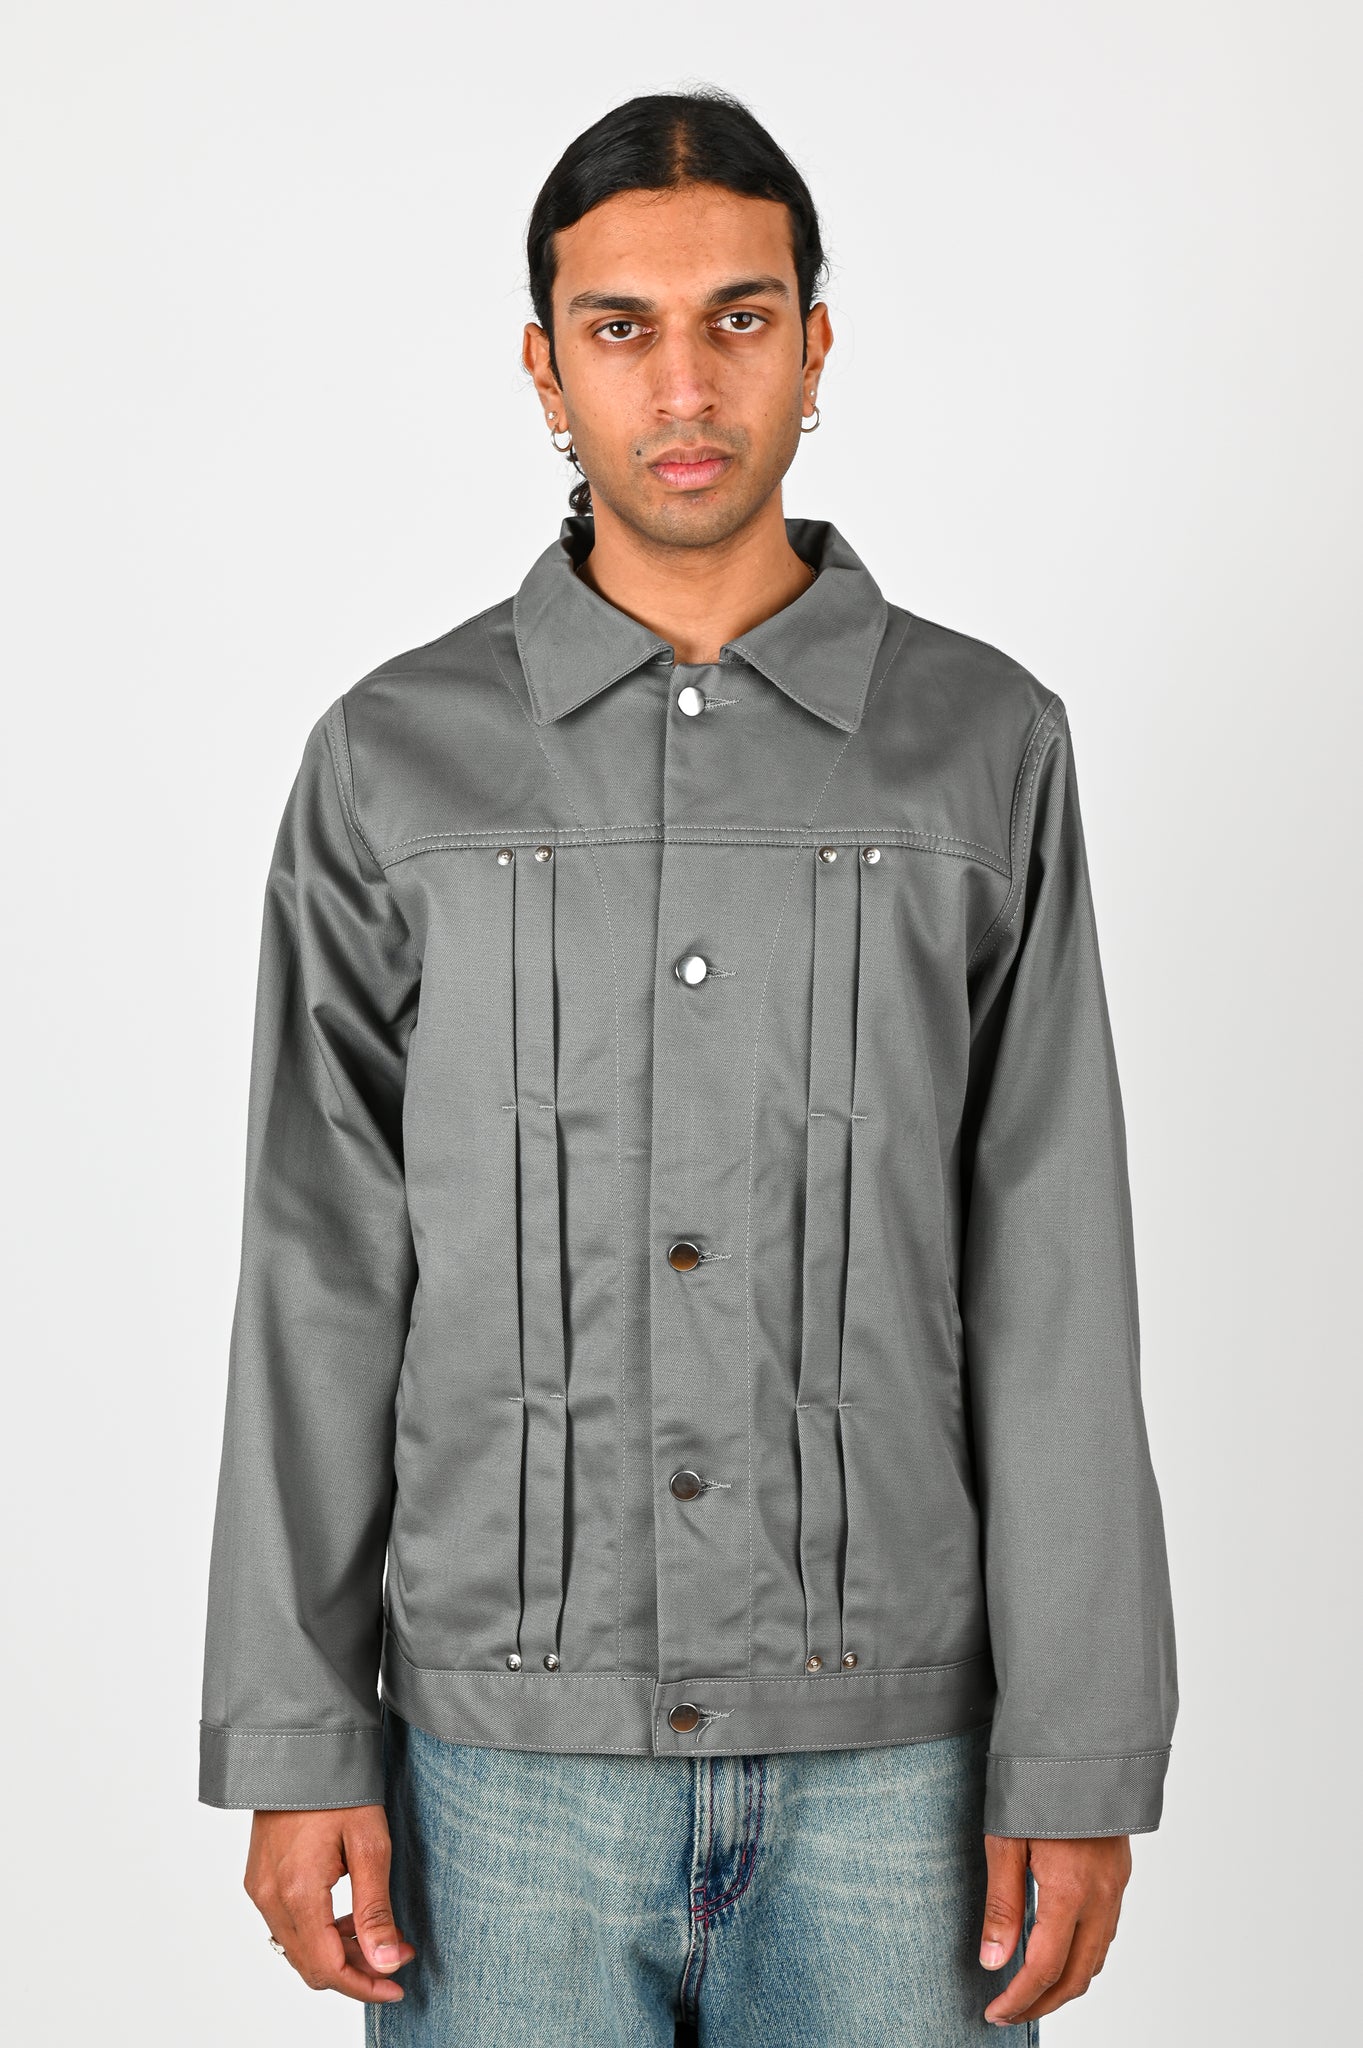 Pseushi Work Jacket in Grey